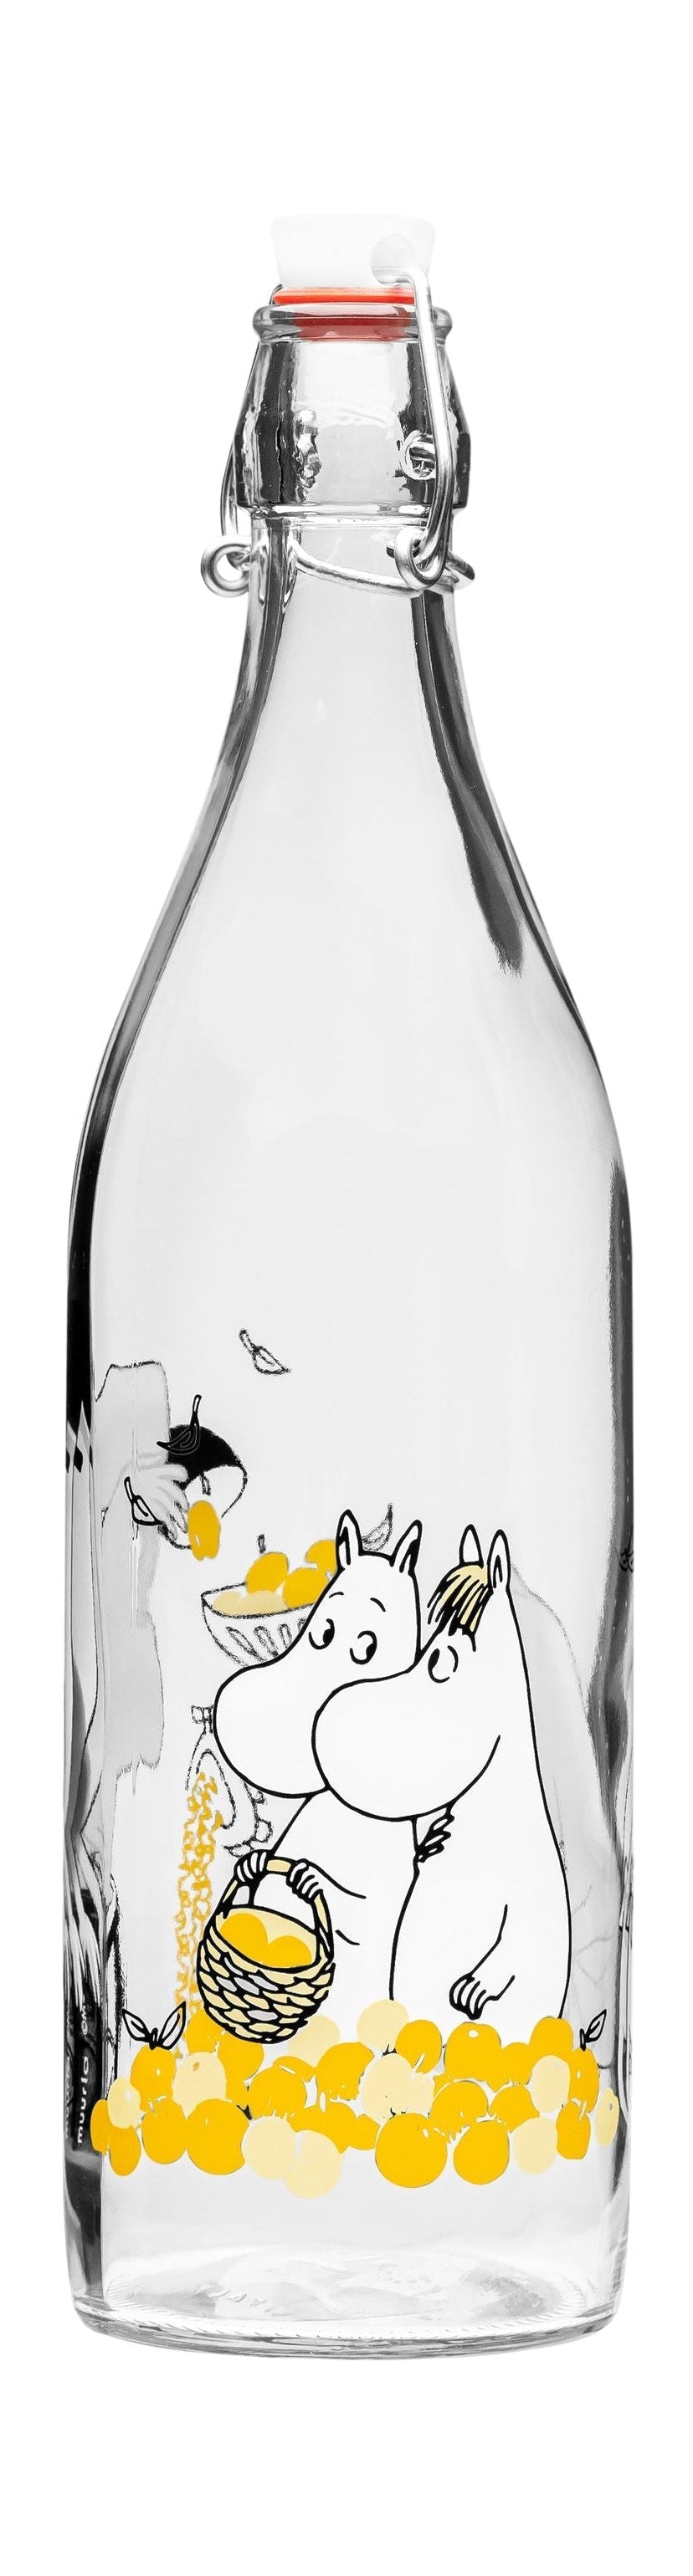 Bottiglia di vetro moomin Muurla, frutta